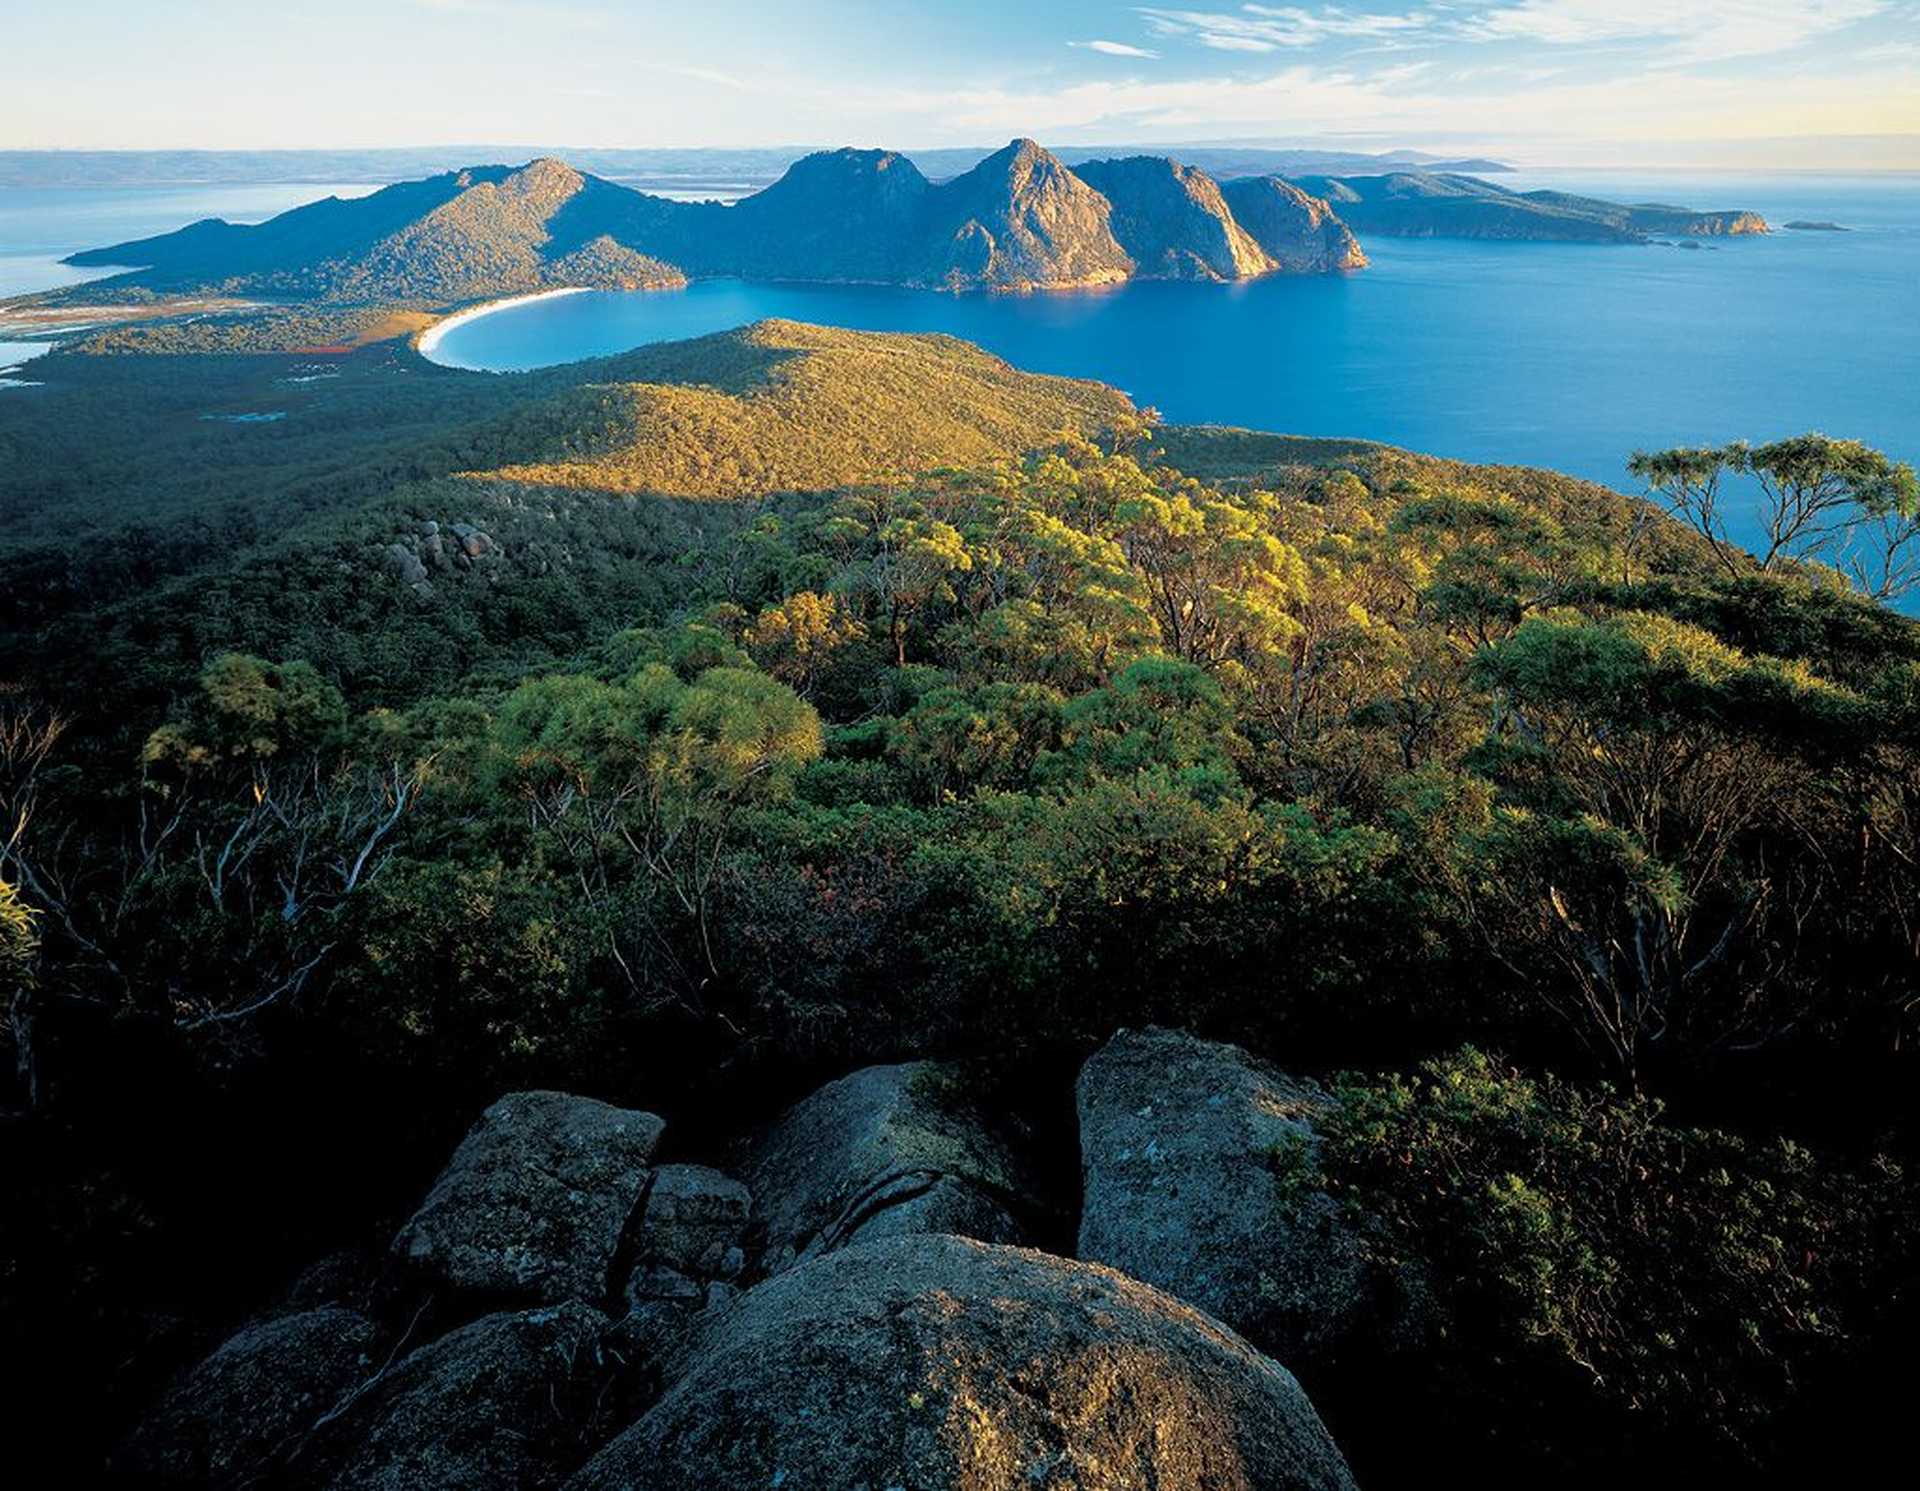 Voyage découverte - Australie : Les visages cachés de Tasmanie avec William Seager